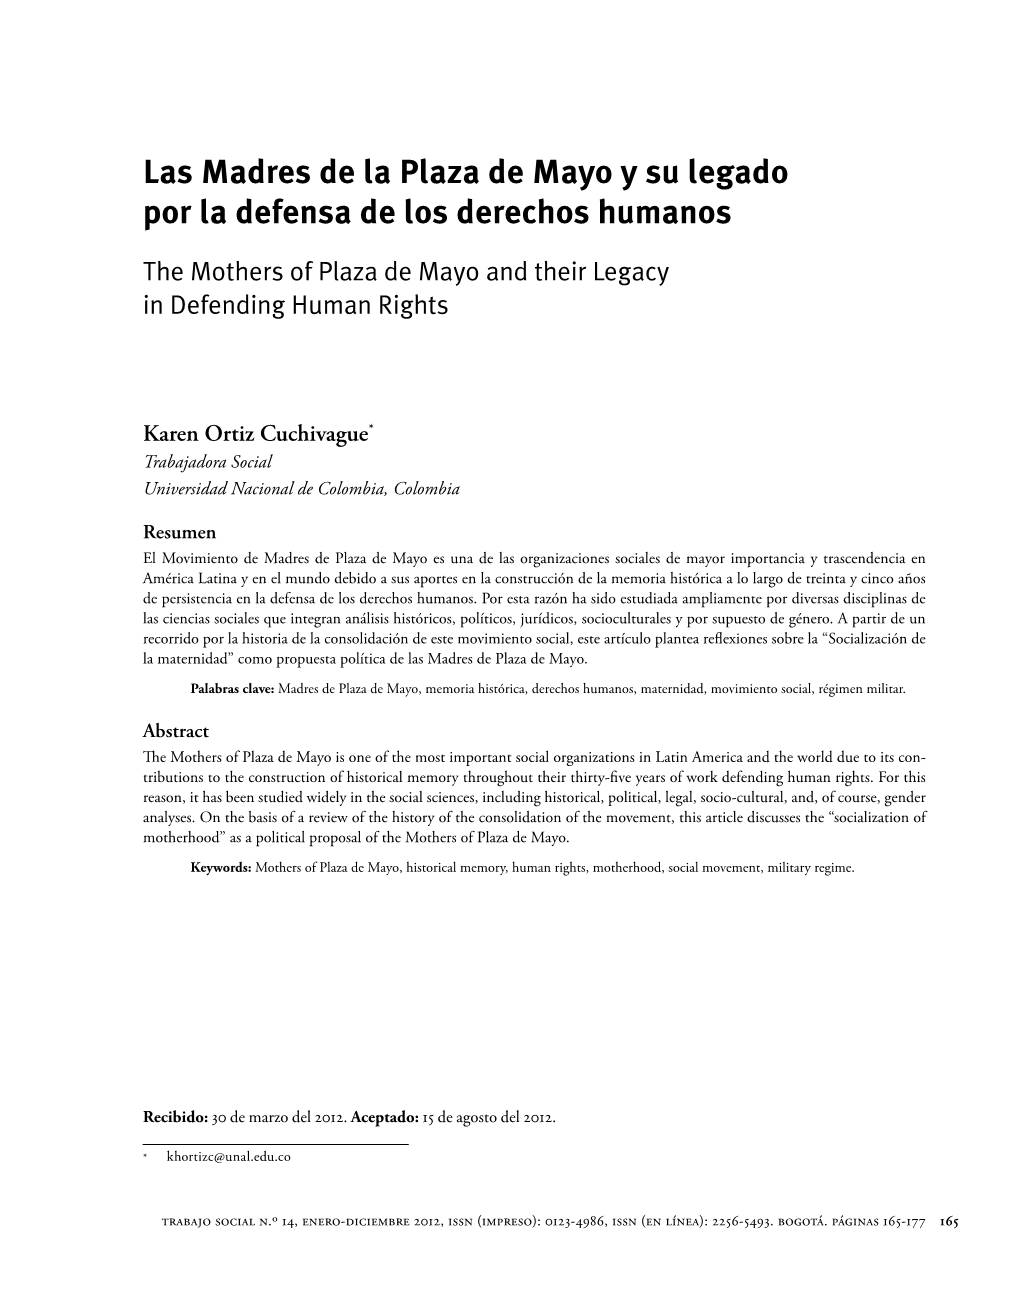 Las Madres De La Plaza De Mayo Y Su Legado Por La Defensa De Los Derechos Humanos